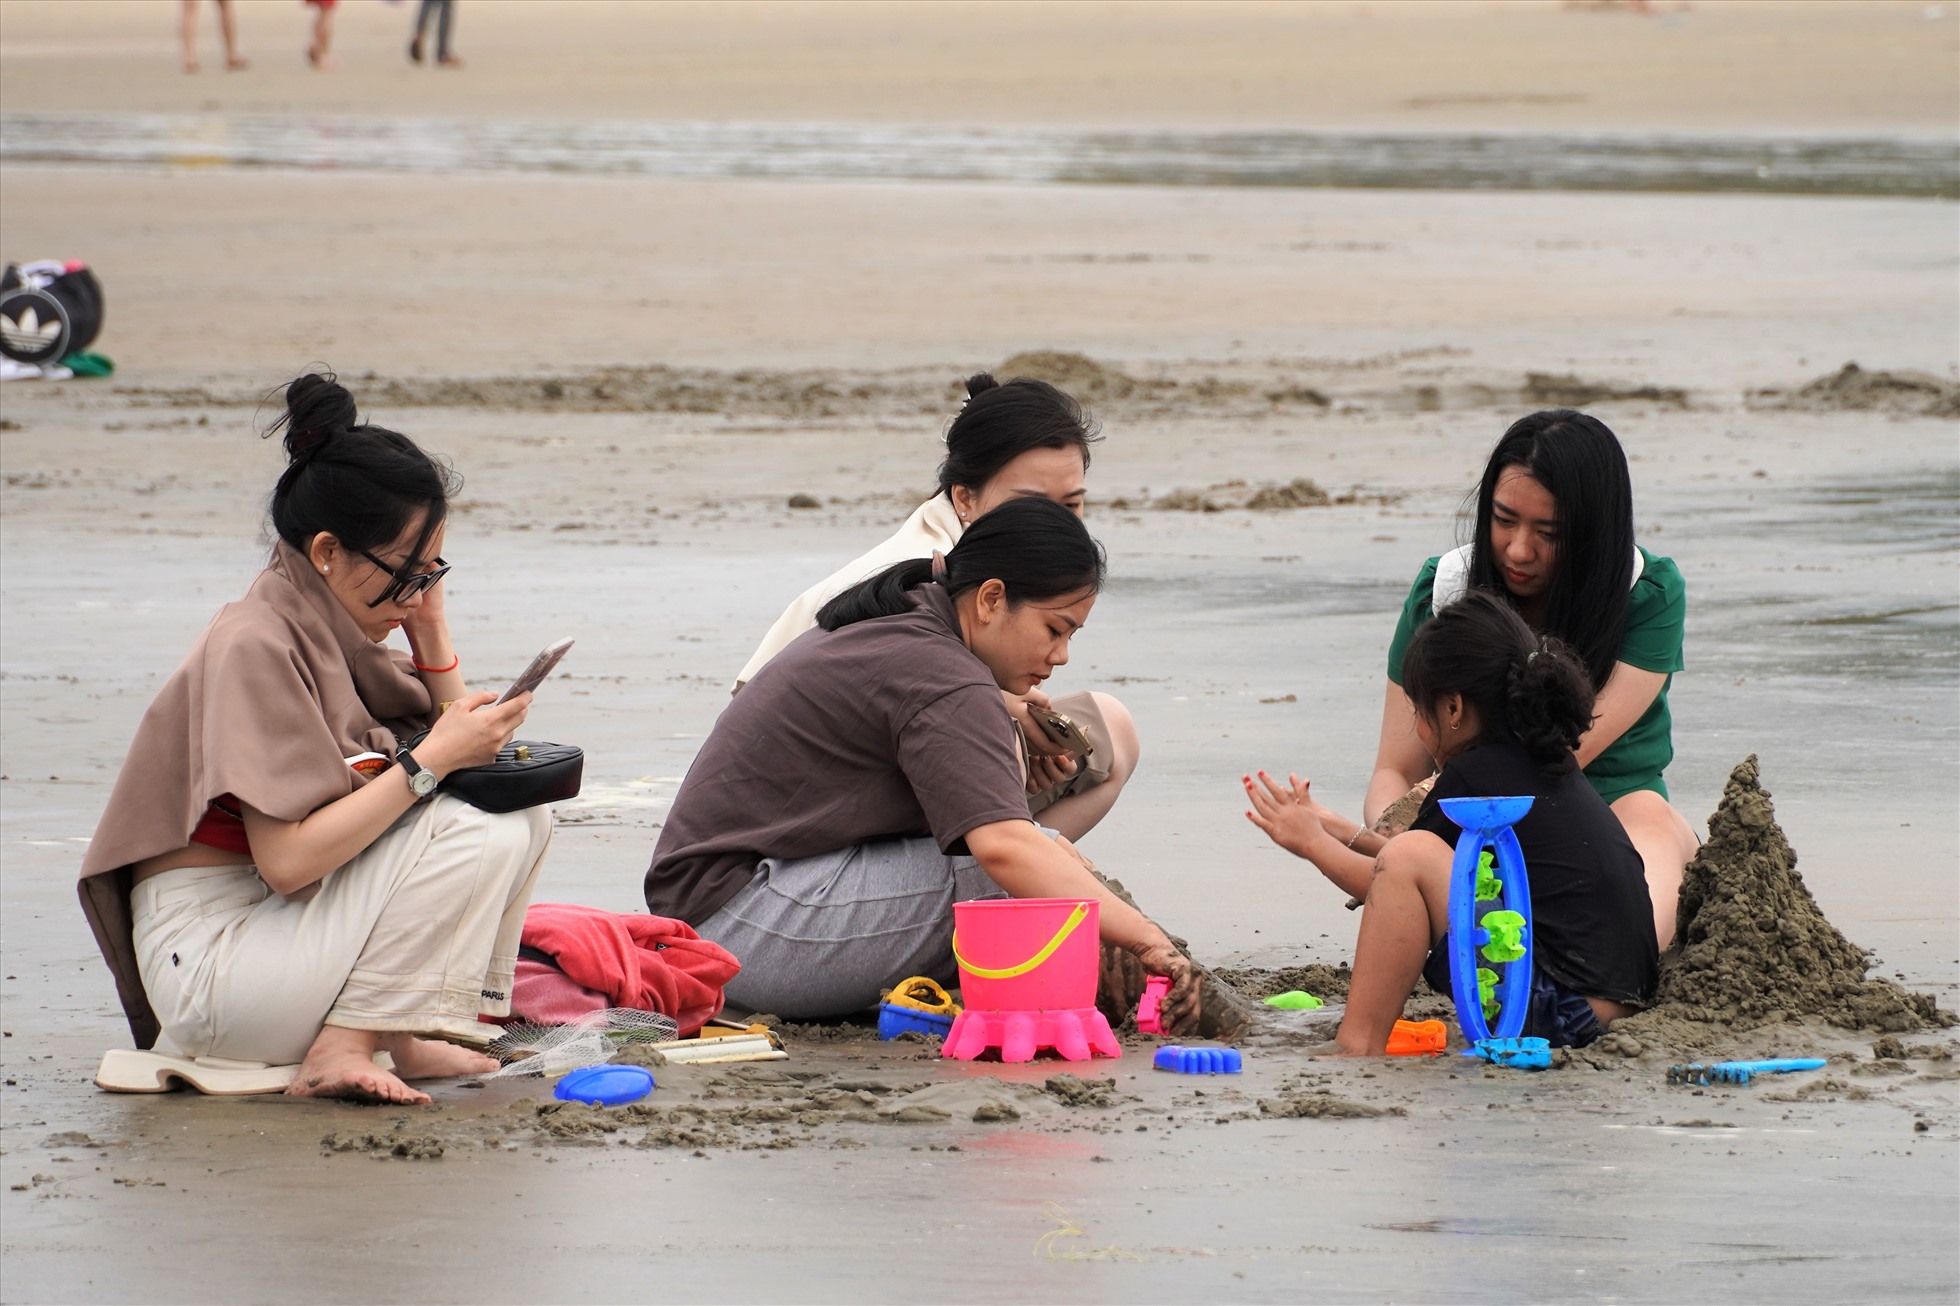 hoặc những nhóm gia đình cùng ngồi chơi cát trên bãi biển. Ảnh: Thành An